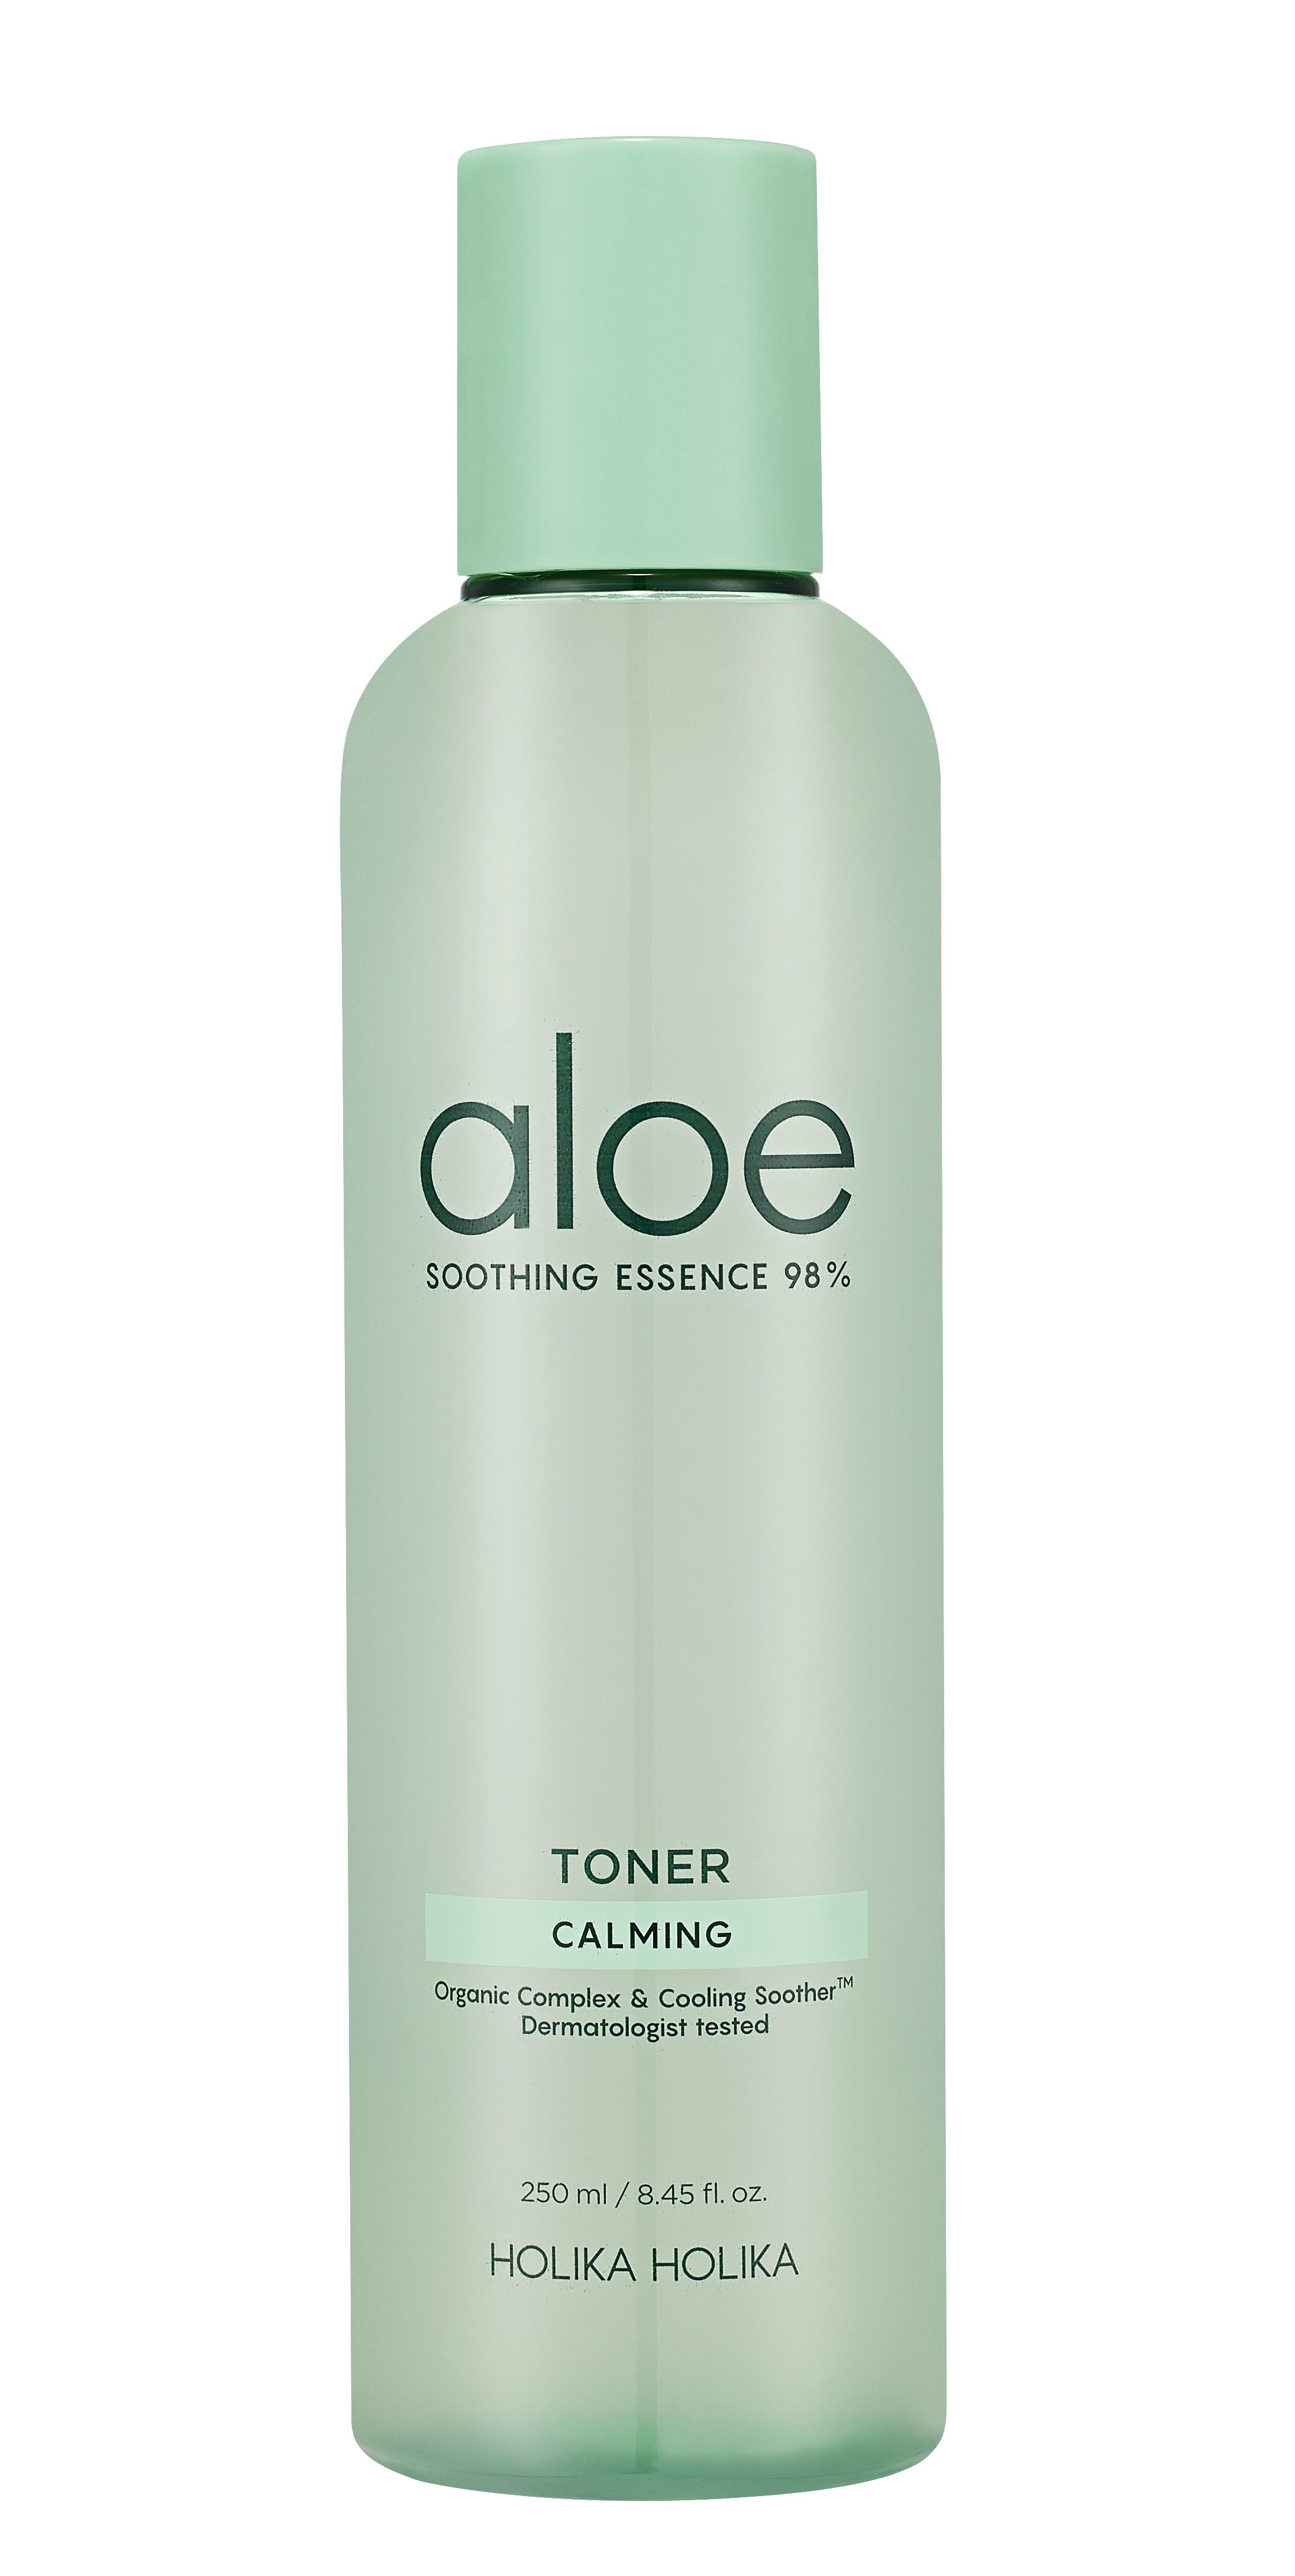 HOLIKA HOLIKA Тонер увлажняющий для лица / Aloe Soothing Essence 98% Toner 250 мл увлажняющий крем для лица aloe soothing essence 80%